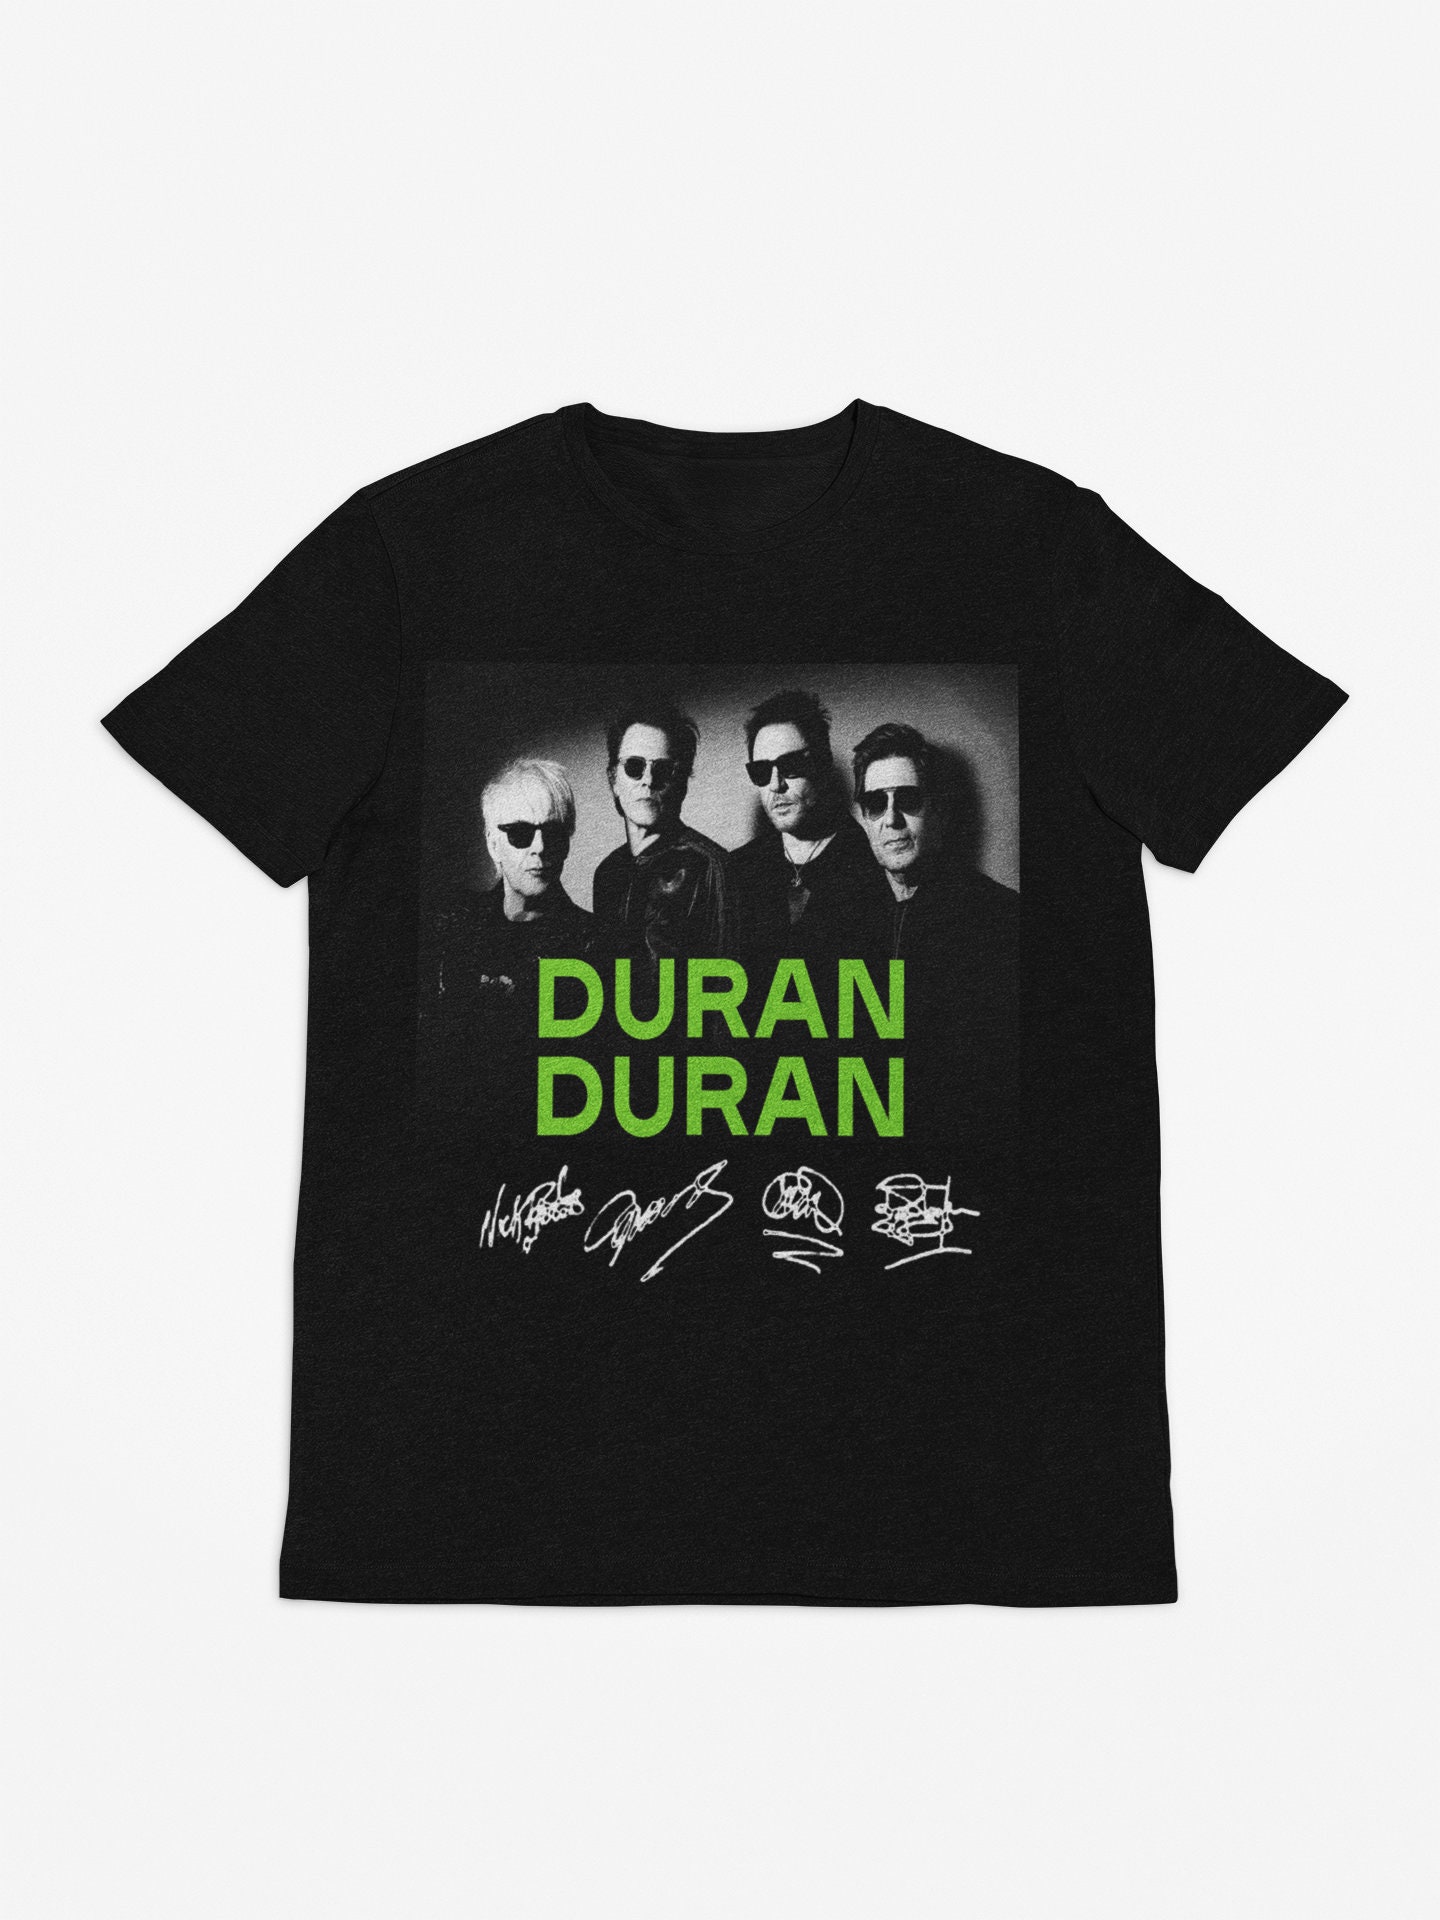 Duran Duran 2022 Double sided tshirt